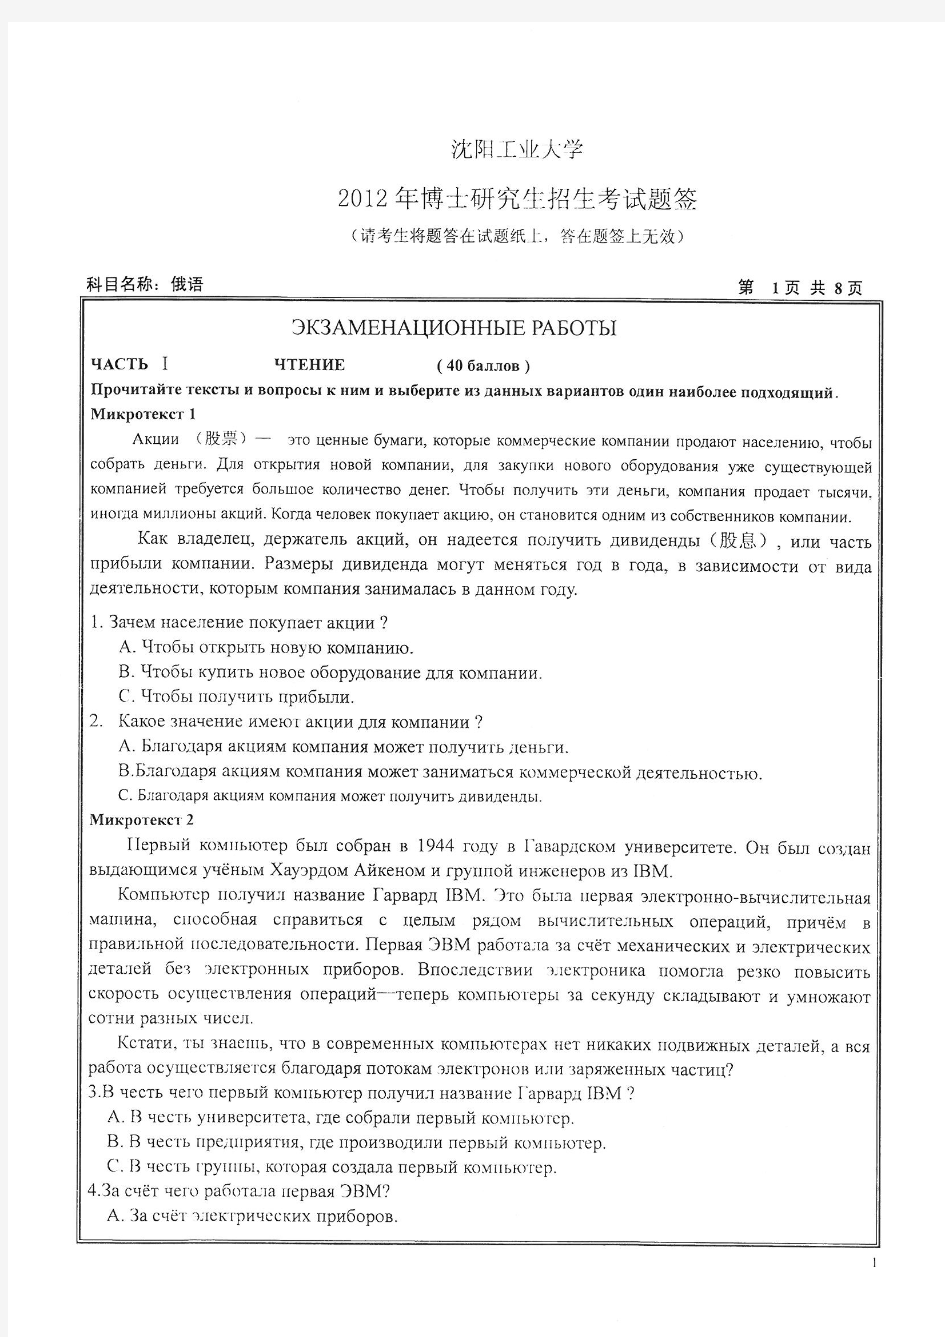 2012年沈阳工业大学考博试题1002俄语